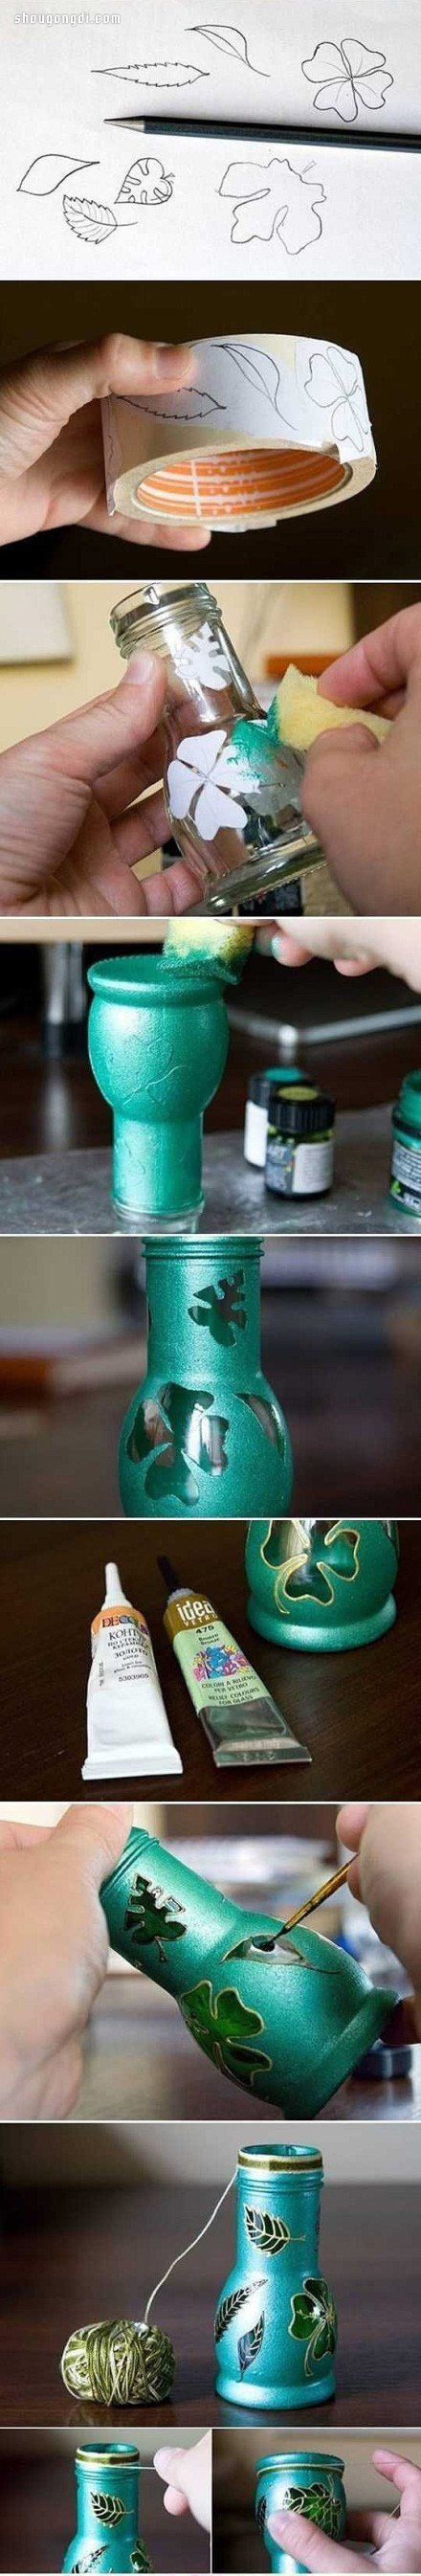 廢棄小玻璃瓶變廢為寶手工制作精美花瓶- www.shougongdi.com